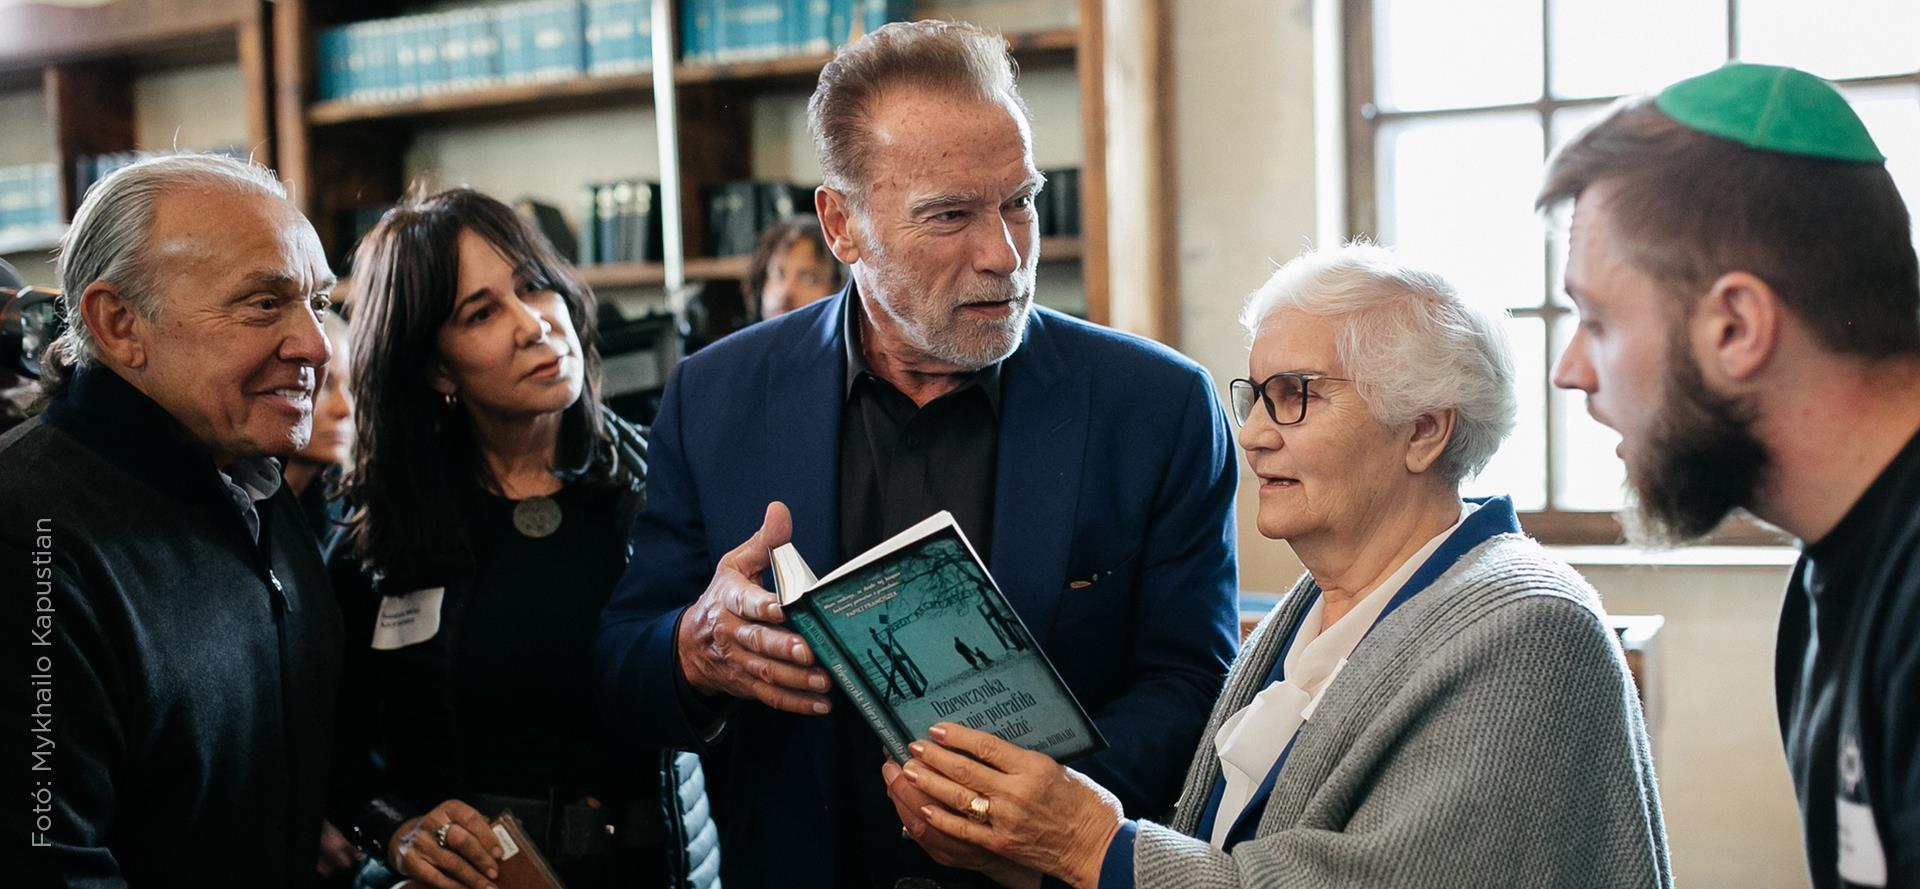 Arnold Schwarzenegger és A kislány, aki képtelen gyűlölni szerzője közösen üzennek a gyűlölet ellen